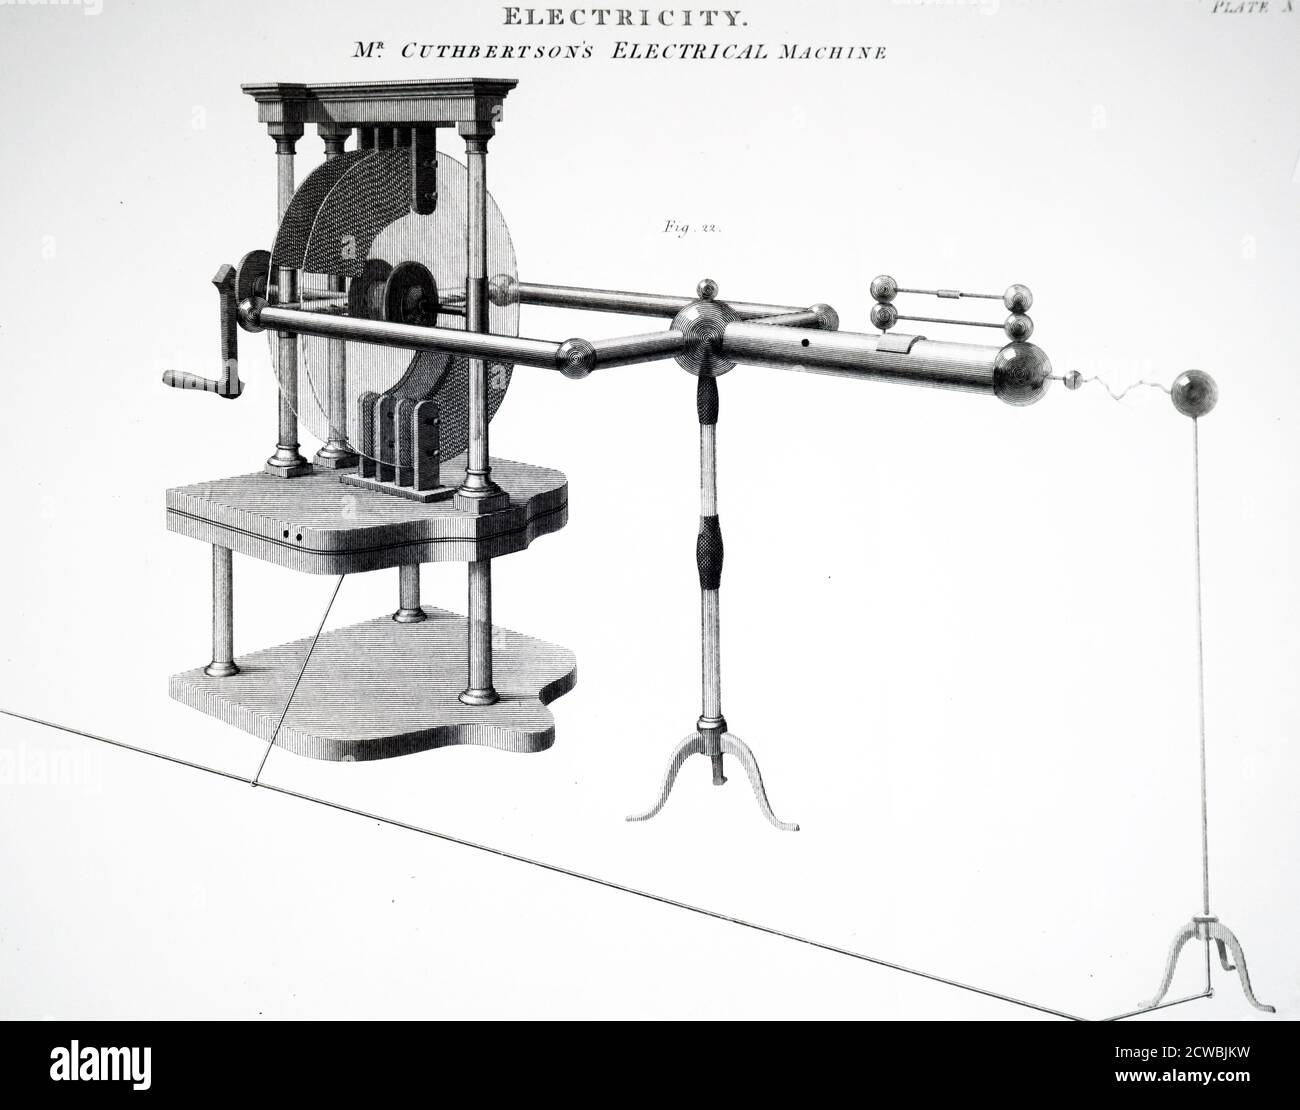 Grabado que representa la máquina eléctrica estática de John Cuthbertson Foto de stock